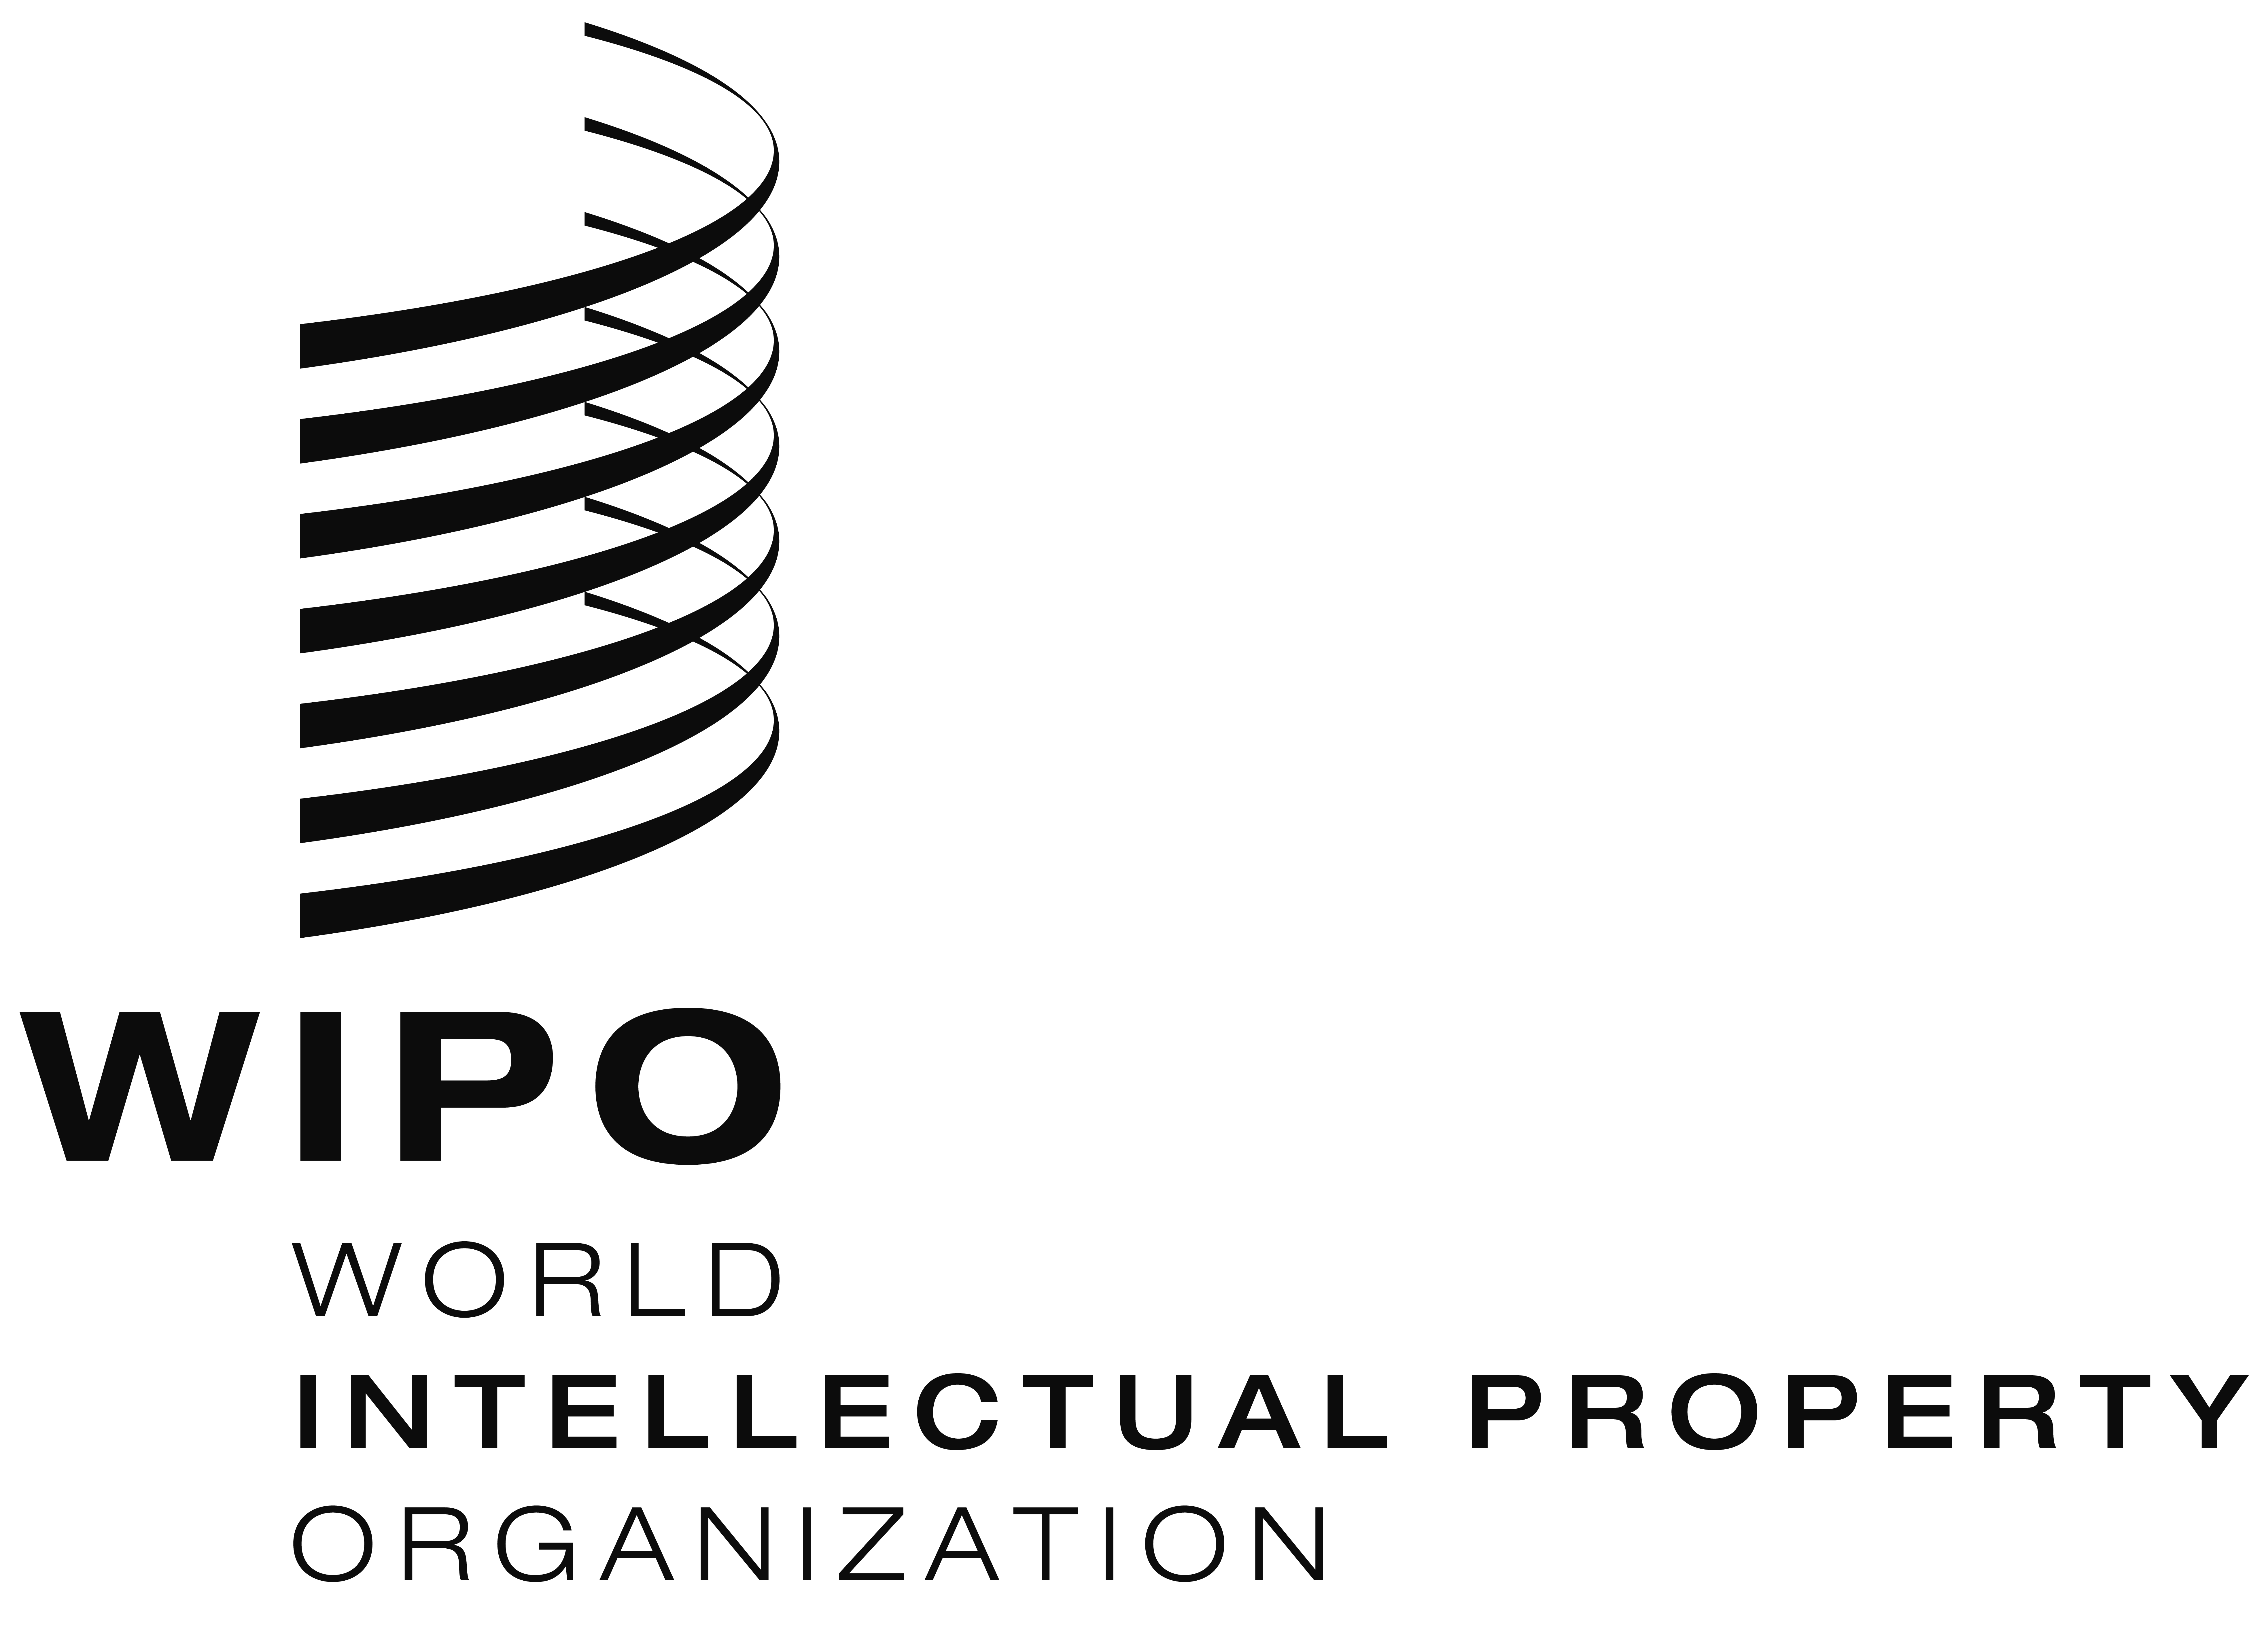 Российский центр интеллектуальной собственности. Всемирная организация интеллектуальной собственности (ВОИС). Всемирная организация интеллектуальной собственности лого. ВОИС логотип. WIPO логотип.